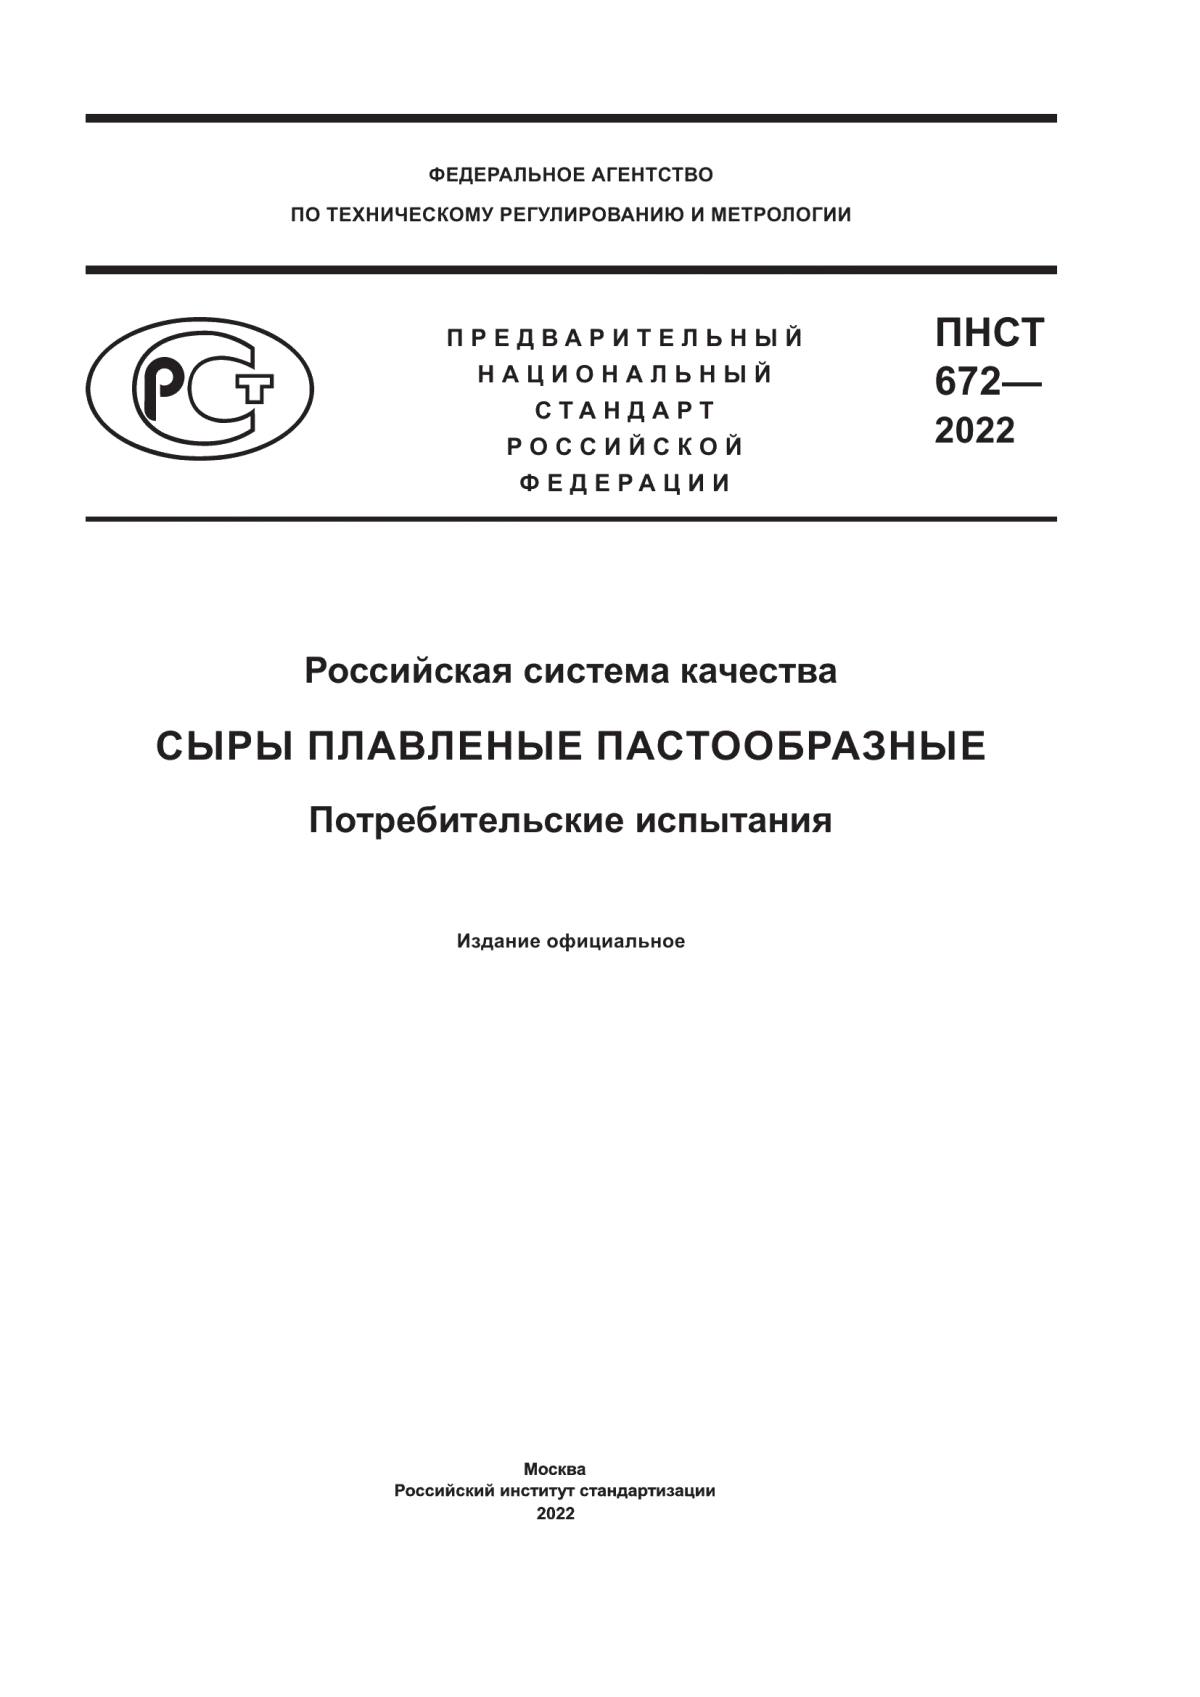 ПНСТ 672-2022 Российская система качества. Сыры плавленые пастообразные. Потребительские испытания